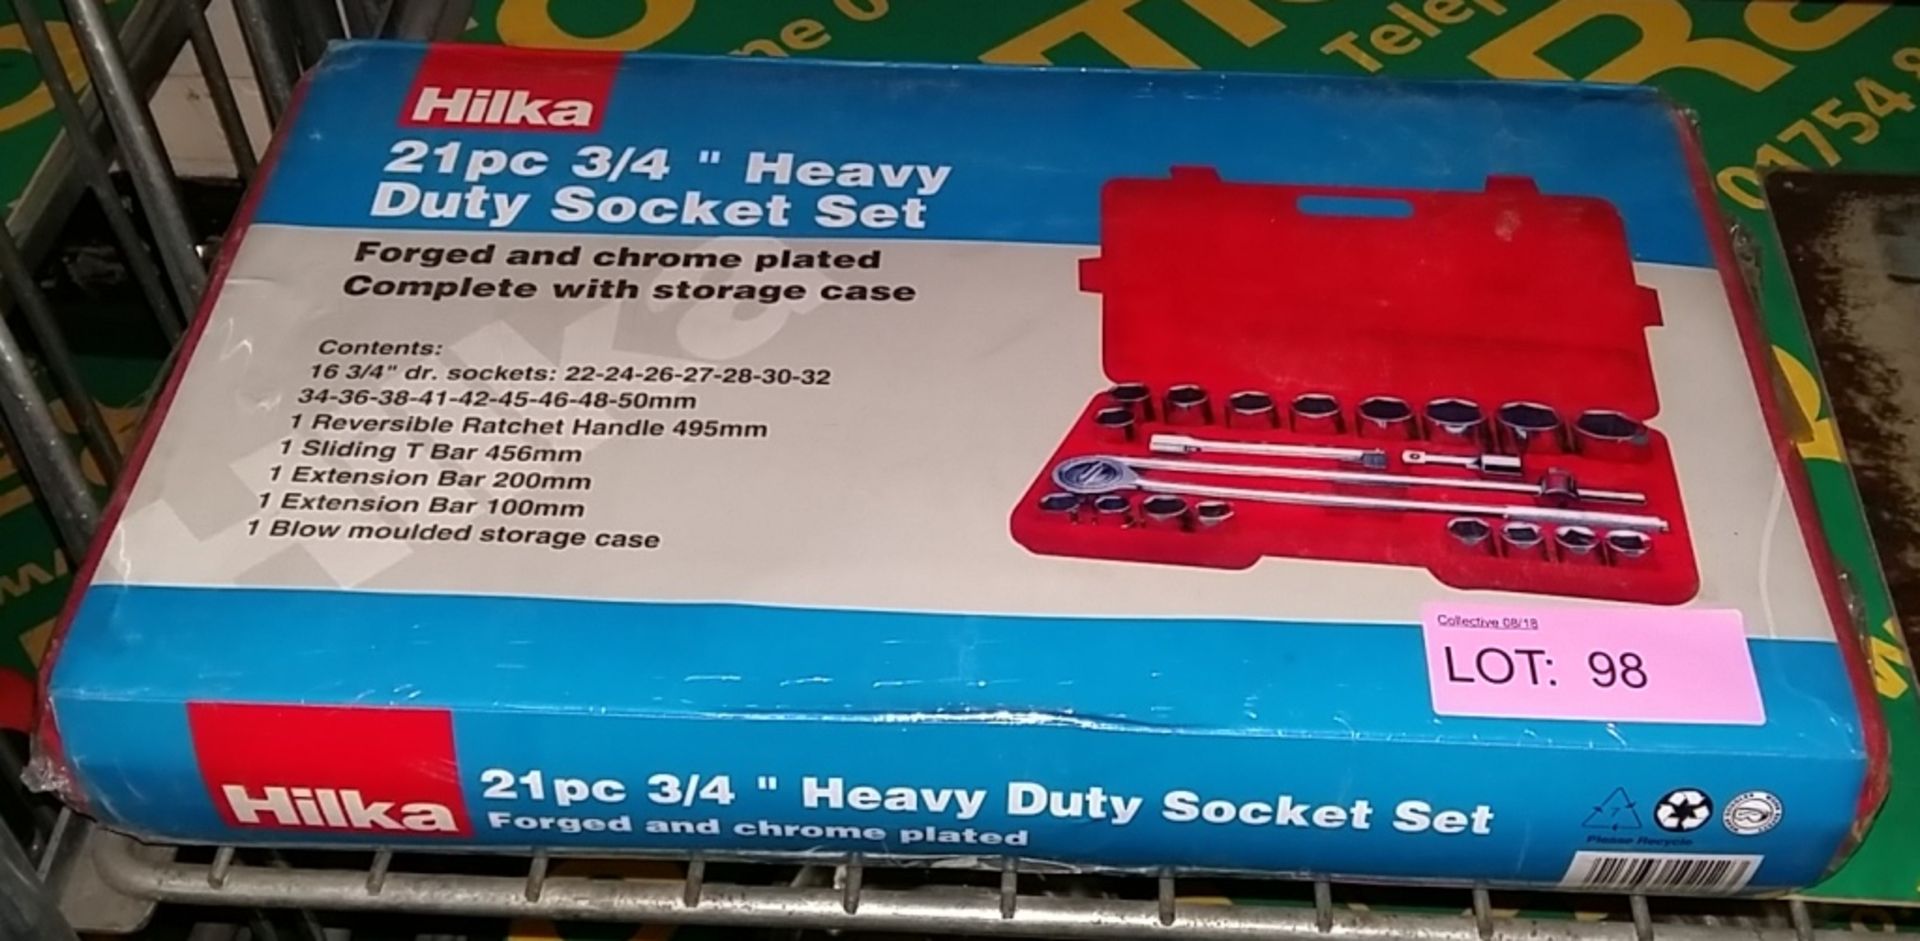 Hilka 21 piece 3/4"Heavy Duty Socket Set